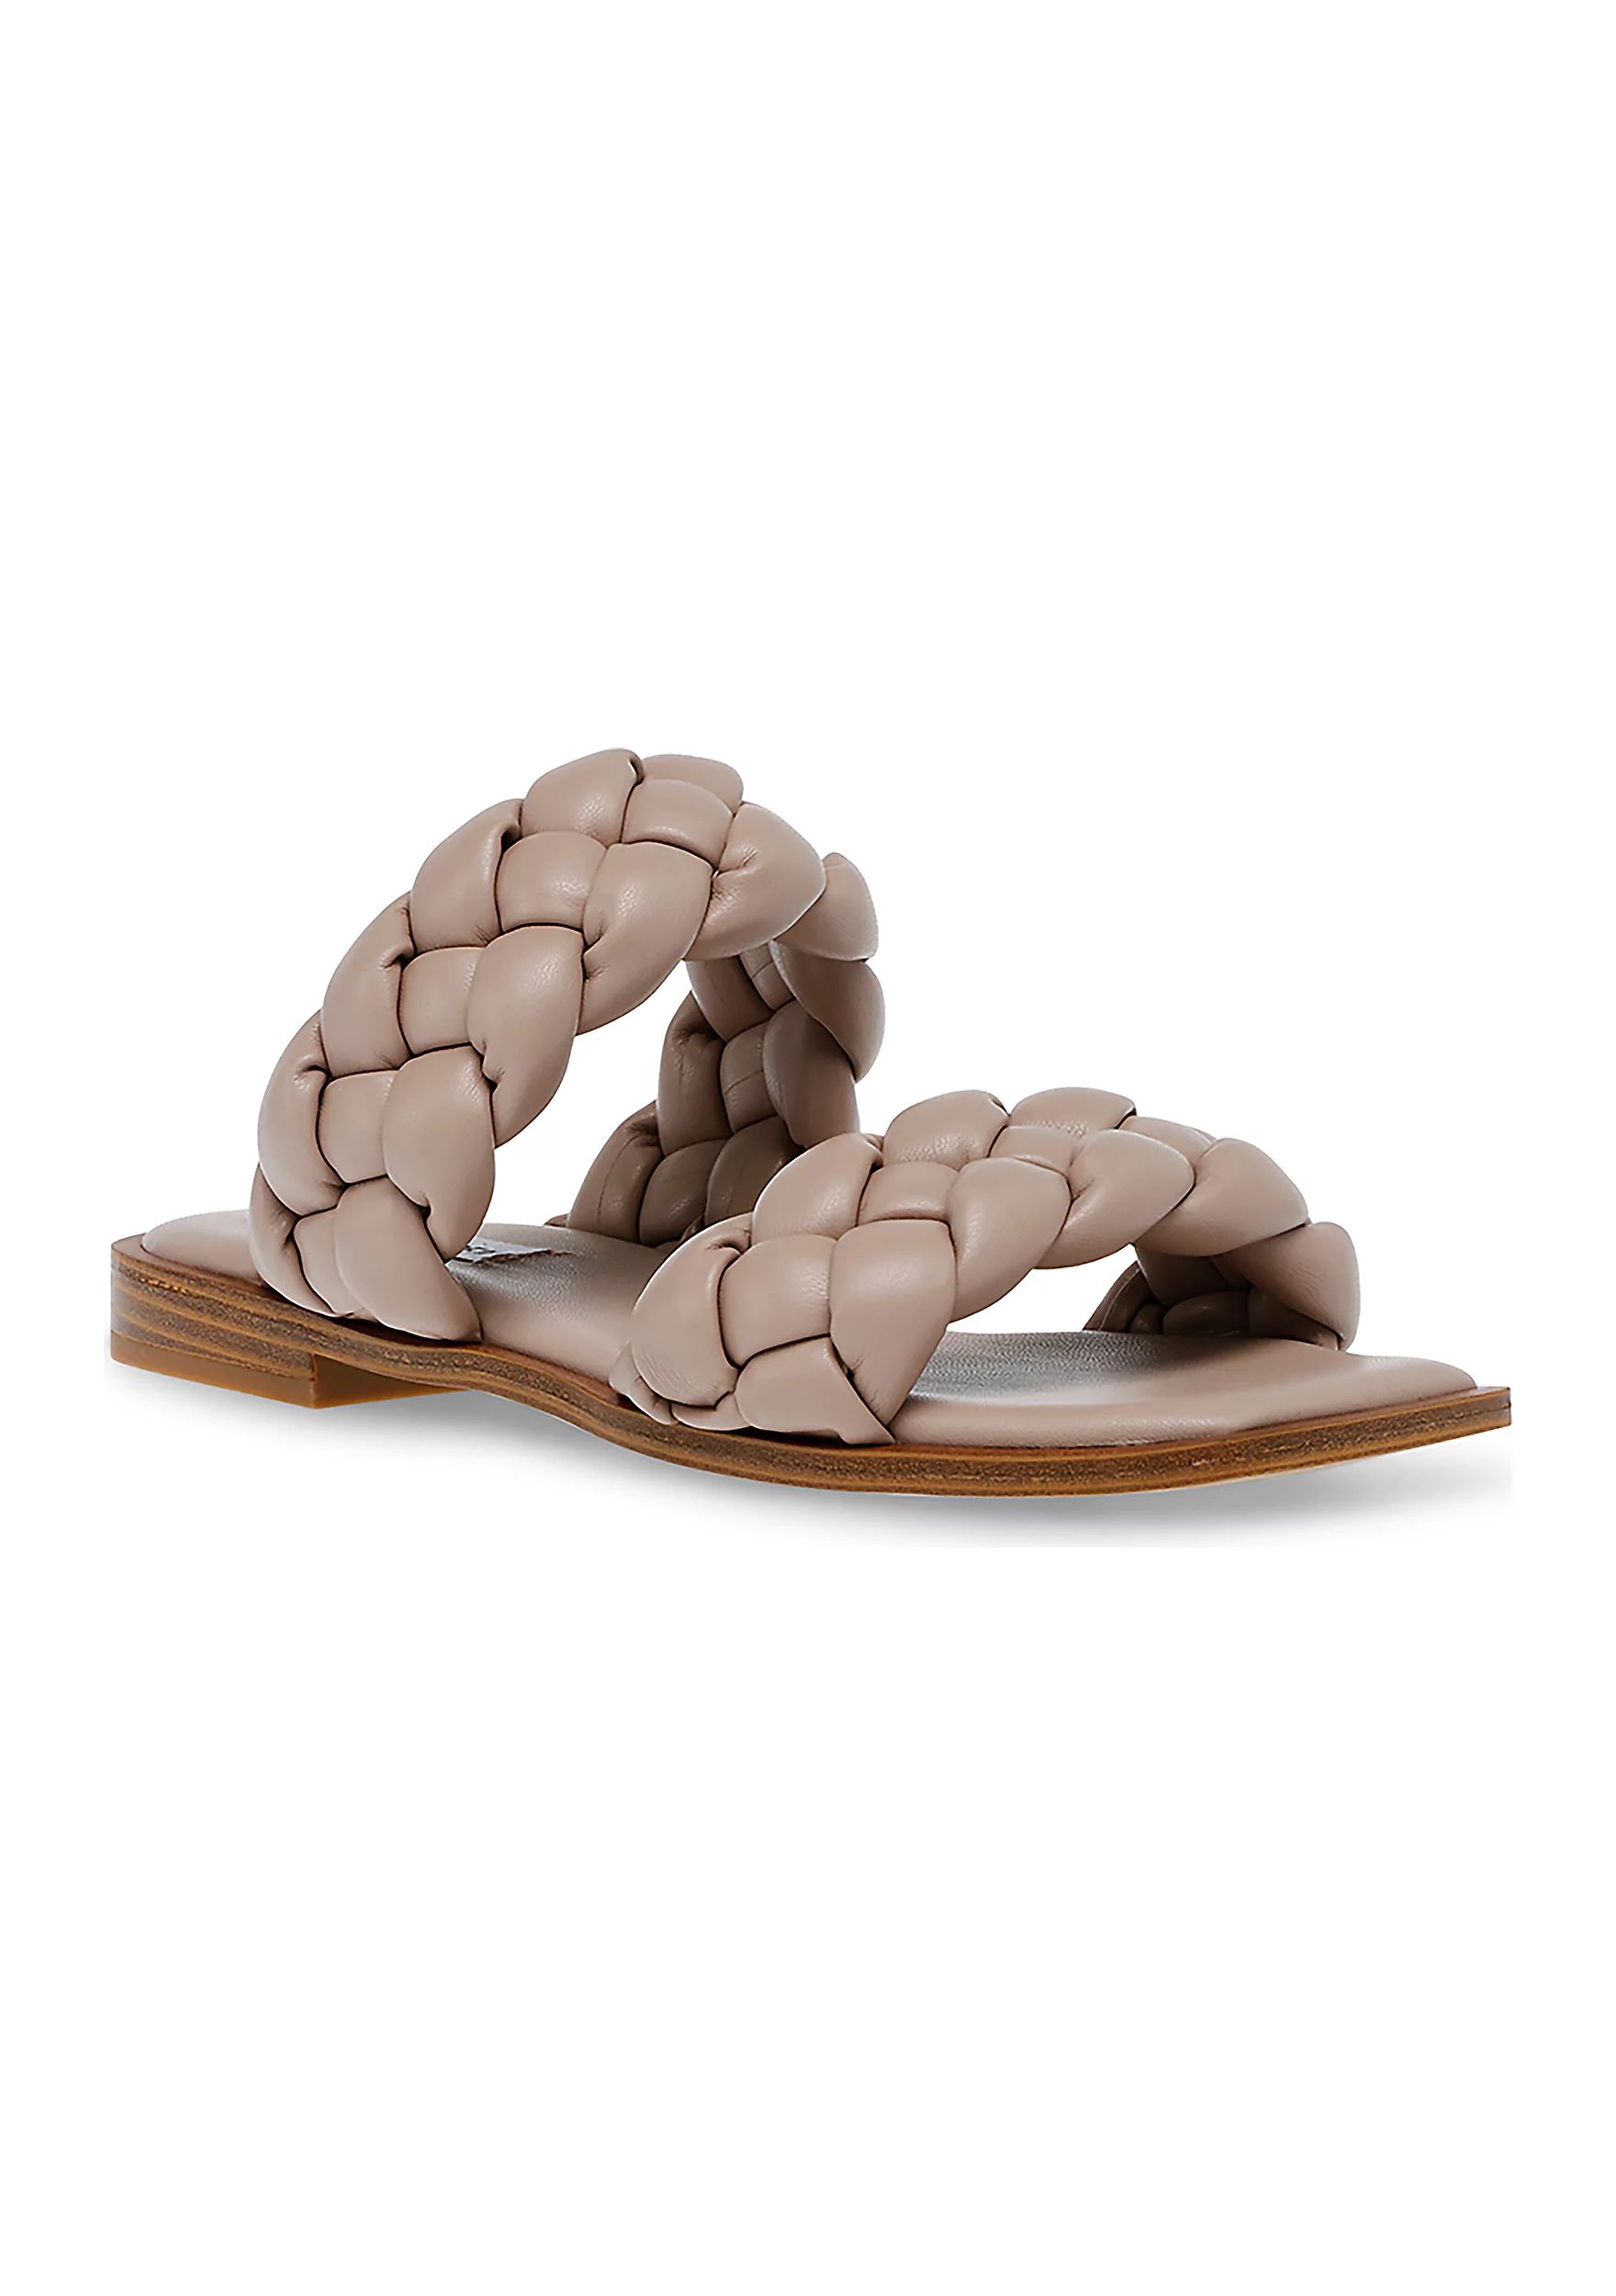 Spain Braided Sandals | Belk